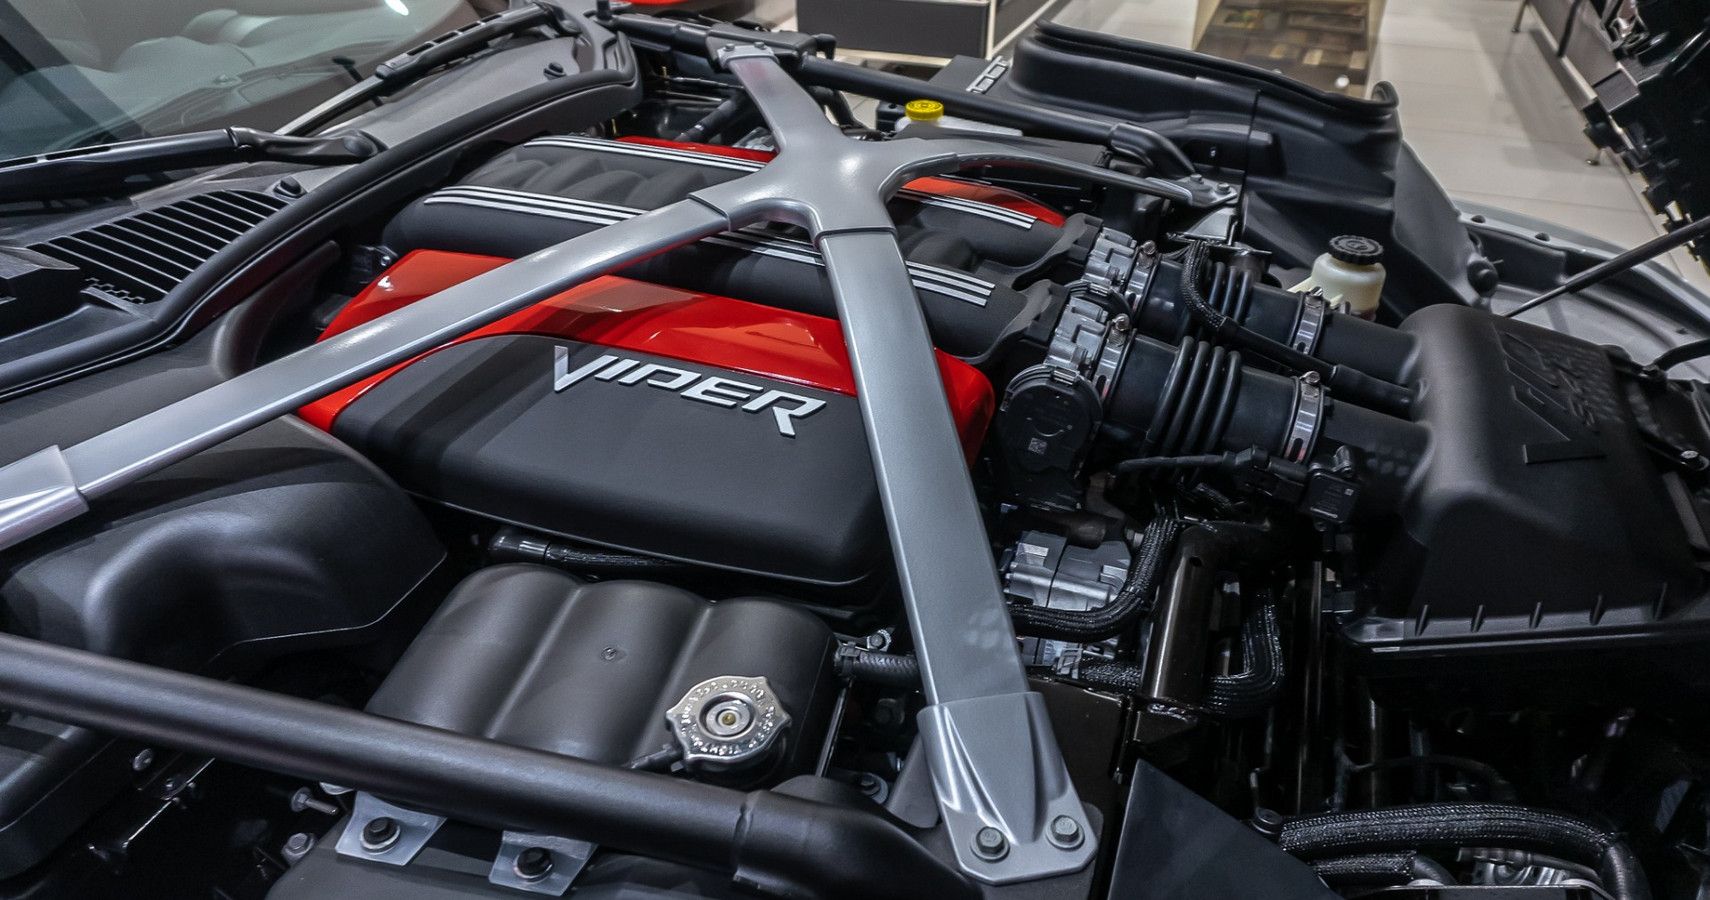 Dodge Viper V10 8.4 liter